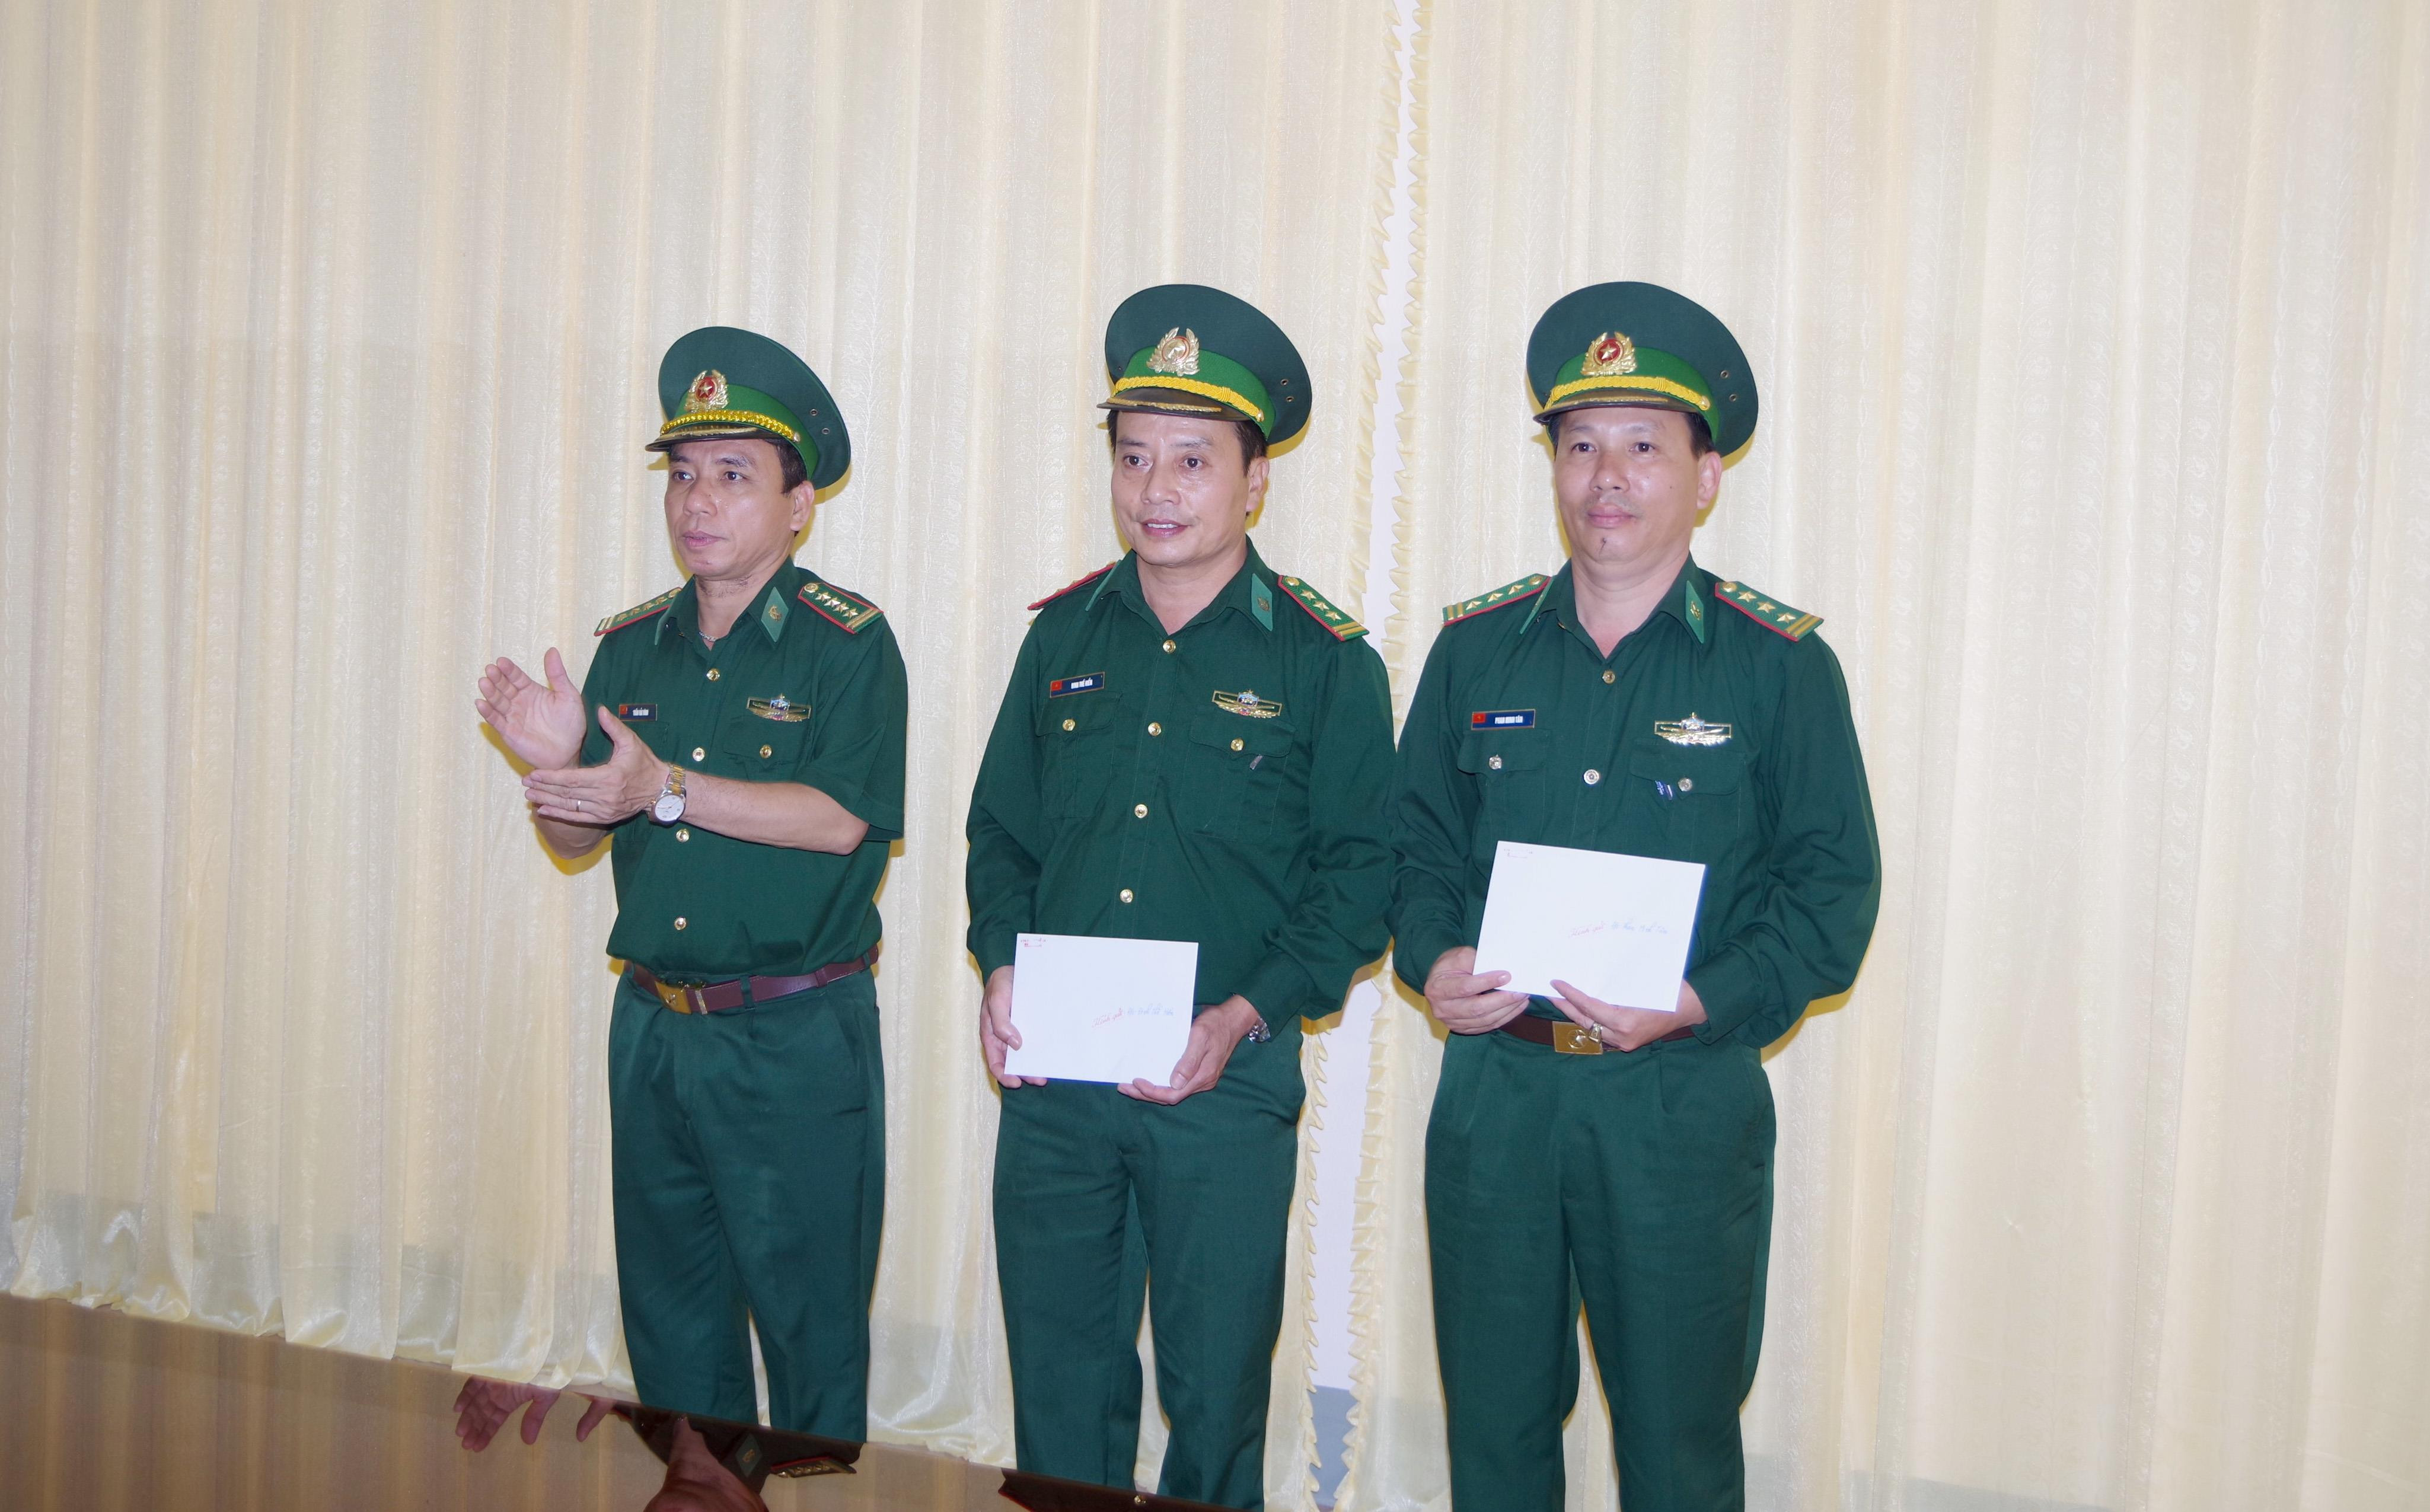 Đại tá Trần Hải Bình - Ủy viên Ban chấp hành Đảng bộ tỉnh, Chỉ huy trưởng BĐBP tỉnh trao quyết định cho Thượng tá Đinh Thế Hiển và Thượng tá Phan Minh Tân.